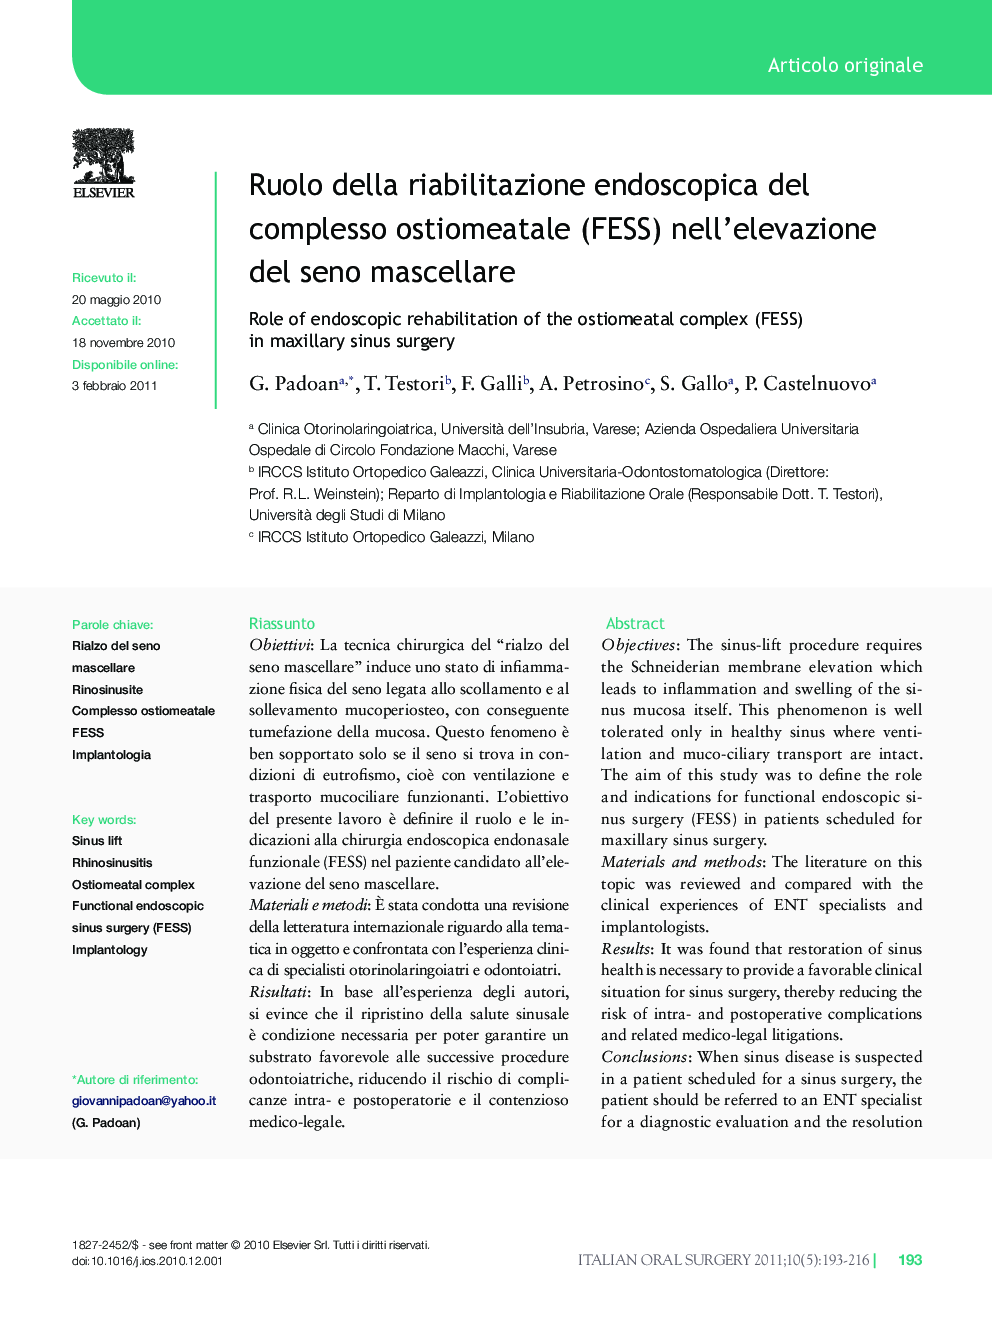 Ruolo della riabilitazione endoscopica del complesso ostiomeatale (FESS) nell'elevazione del seno mascellare